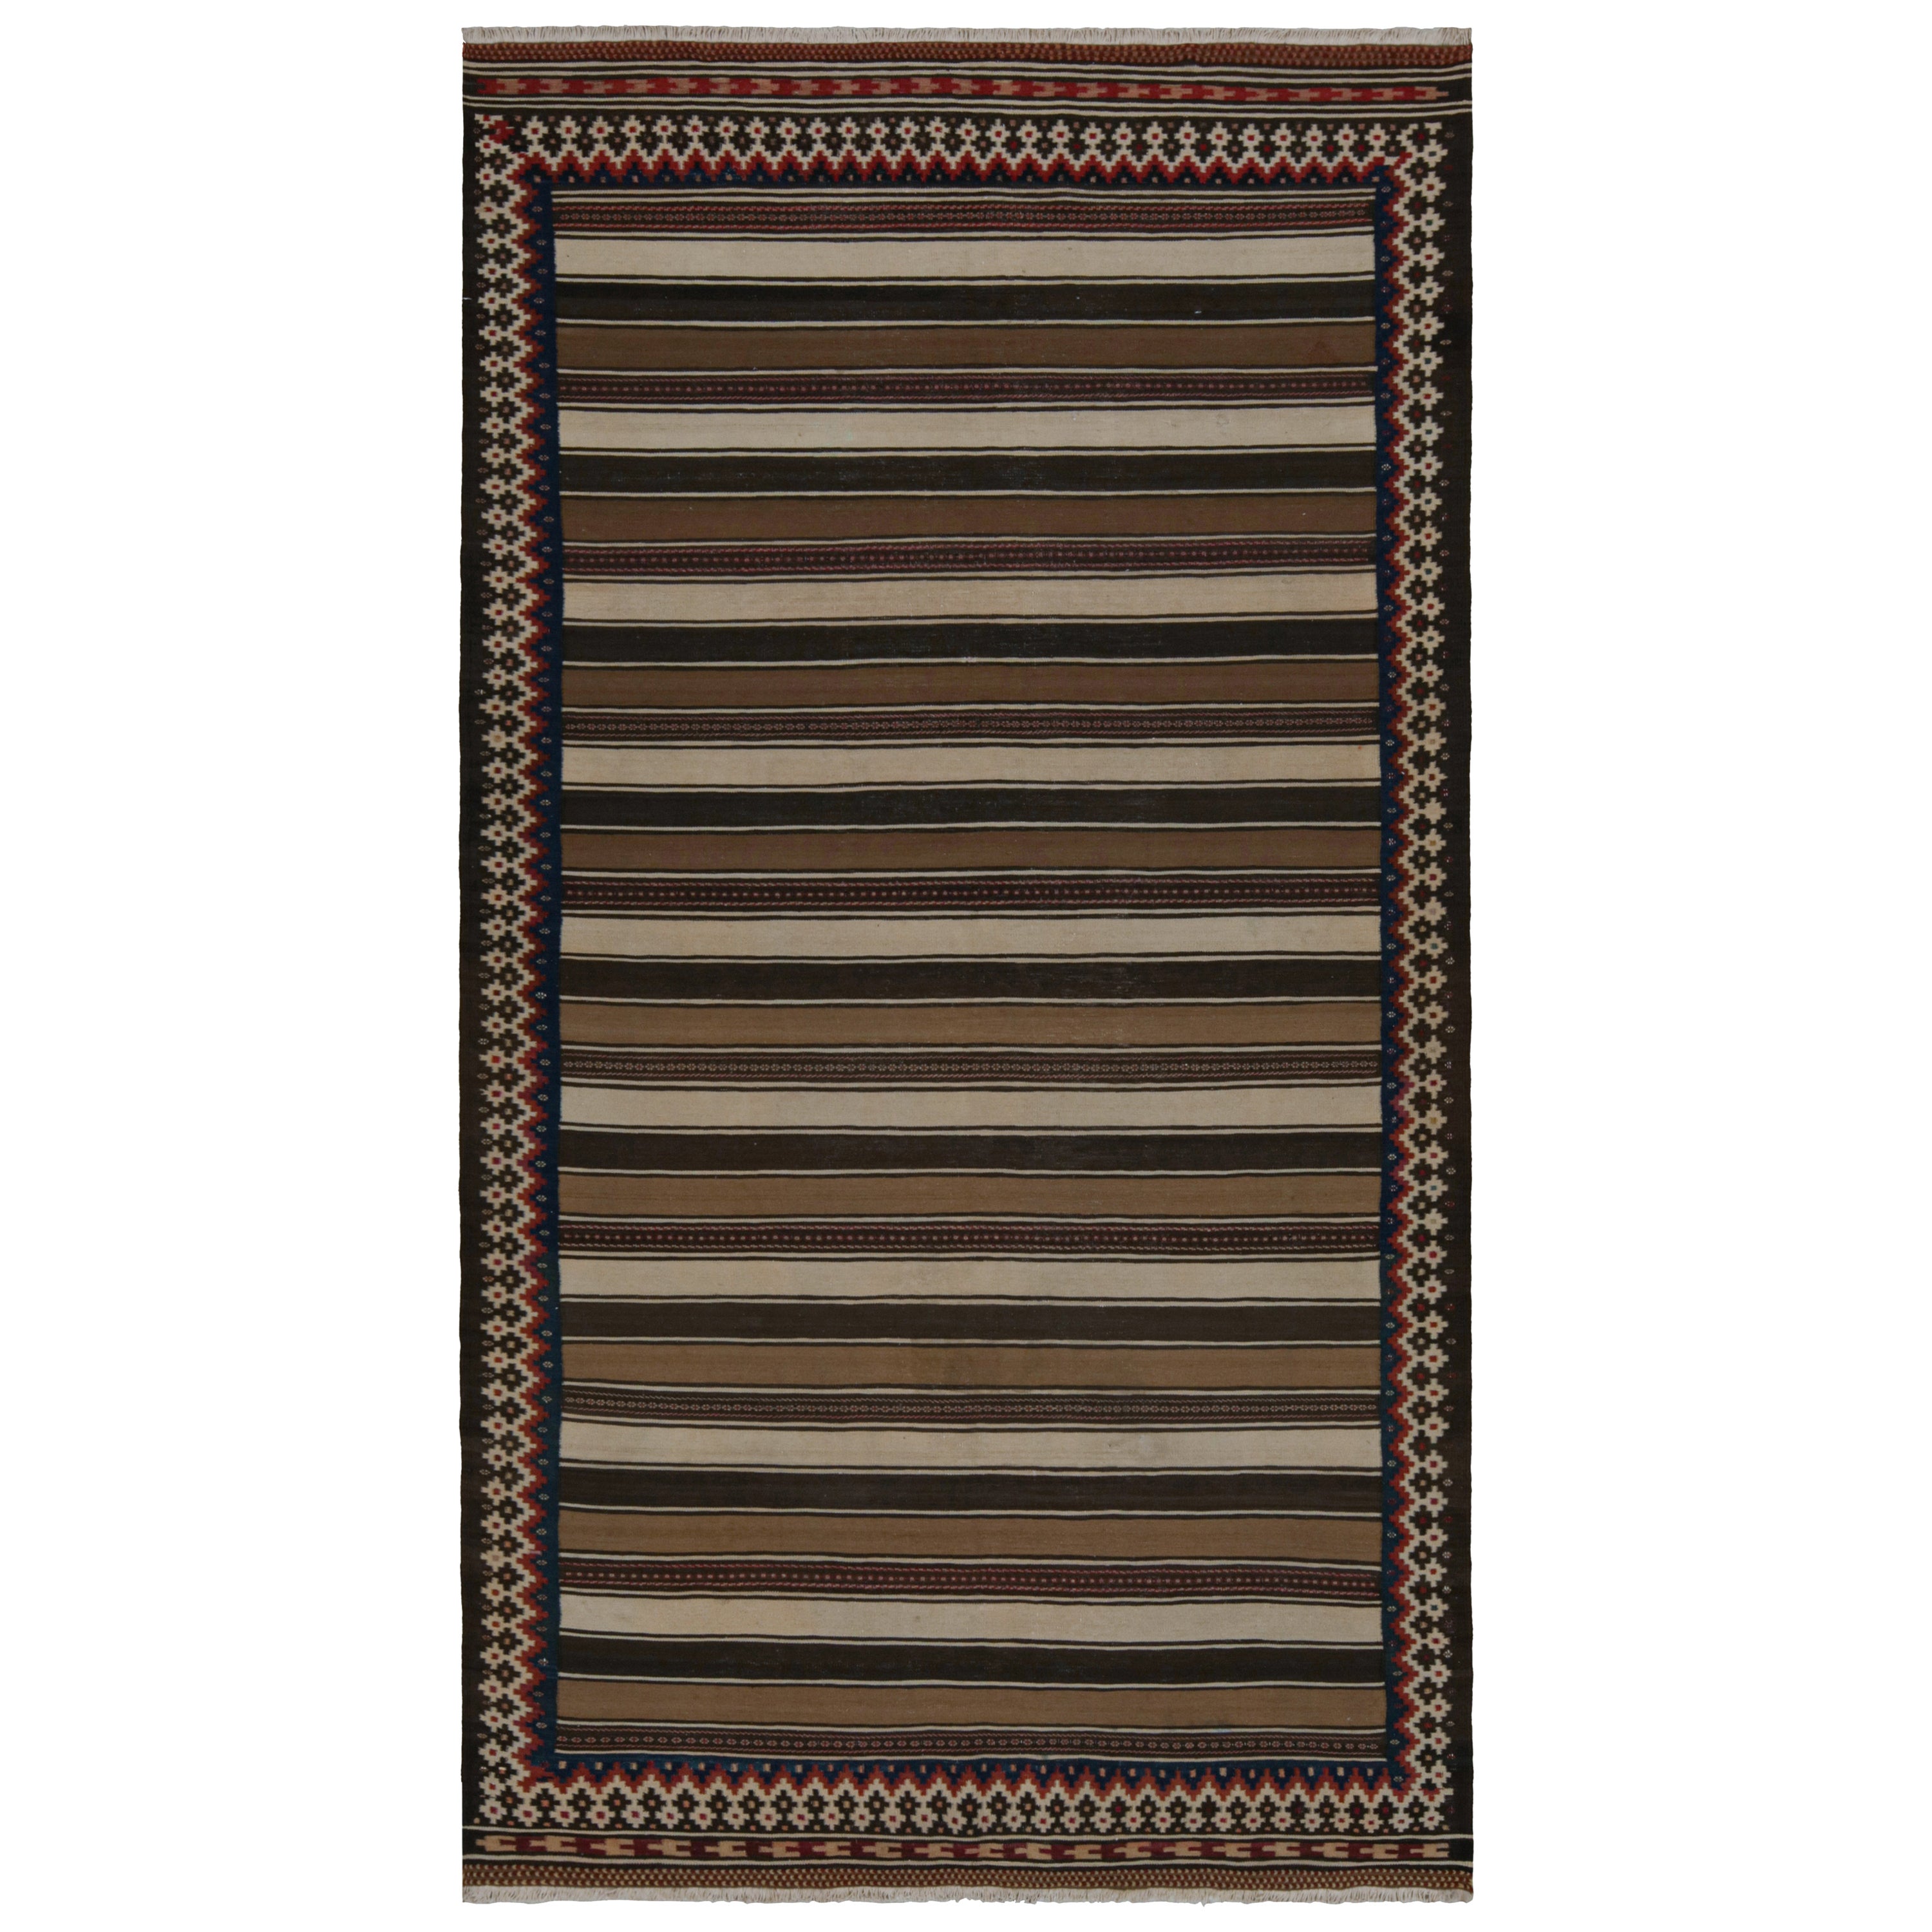 Vintage Afghan Tribal Kilim rug, with Beige/Brown Stripes, from Rug & Kilim